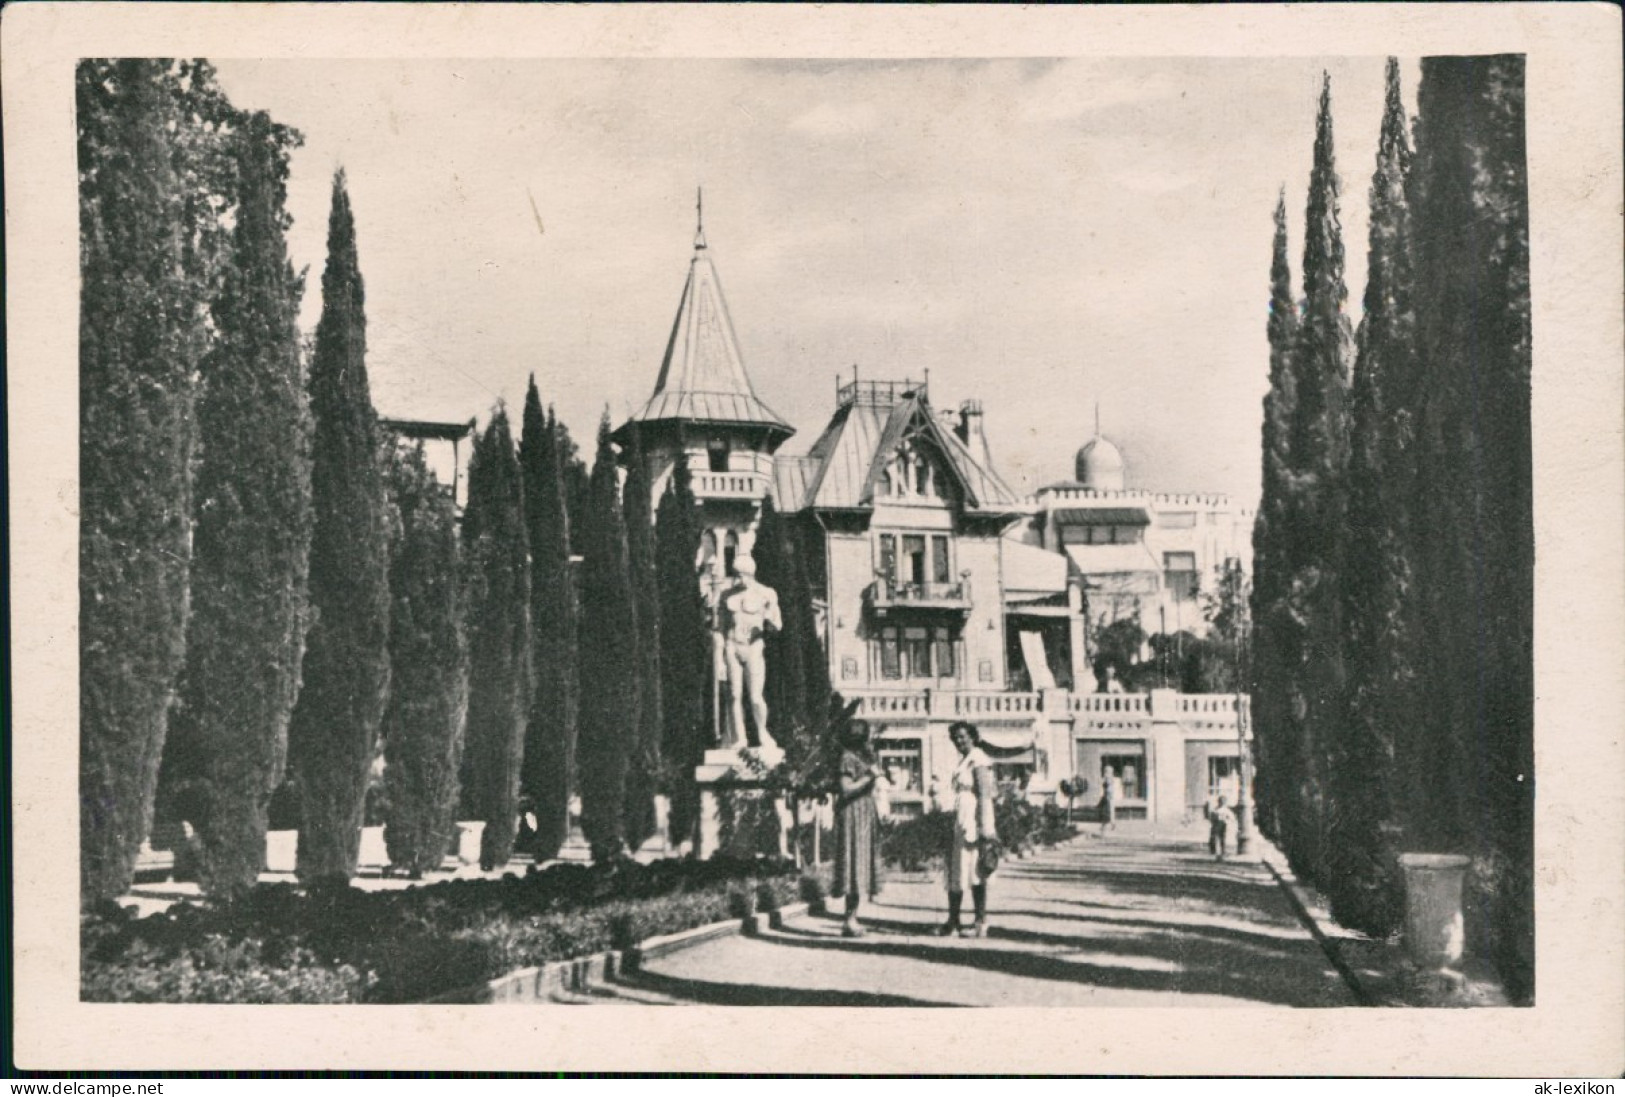 Postcard Simeiz Симеи́з Sanatorium Majak - Krim Crimea 1964 - Ukraine